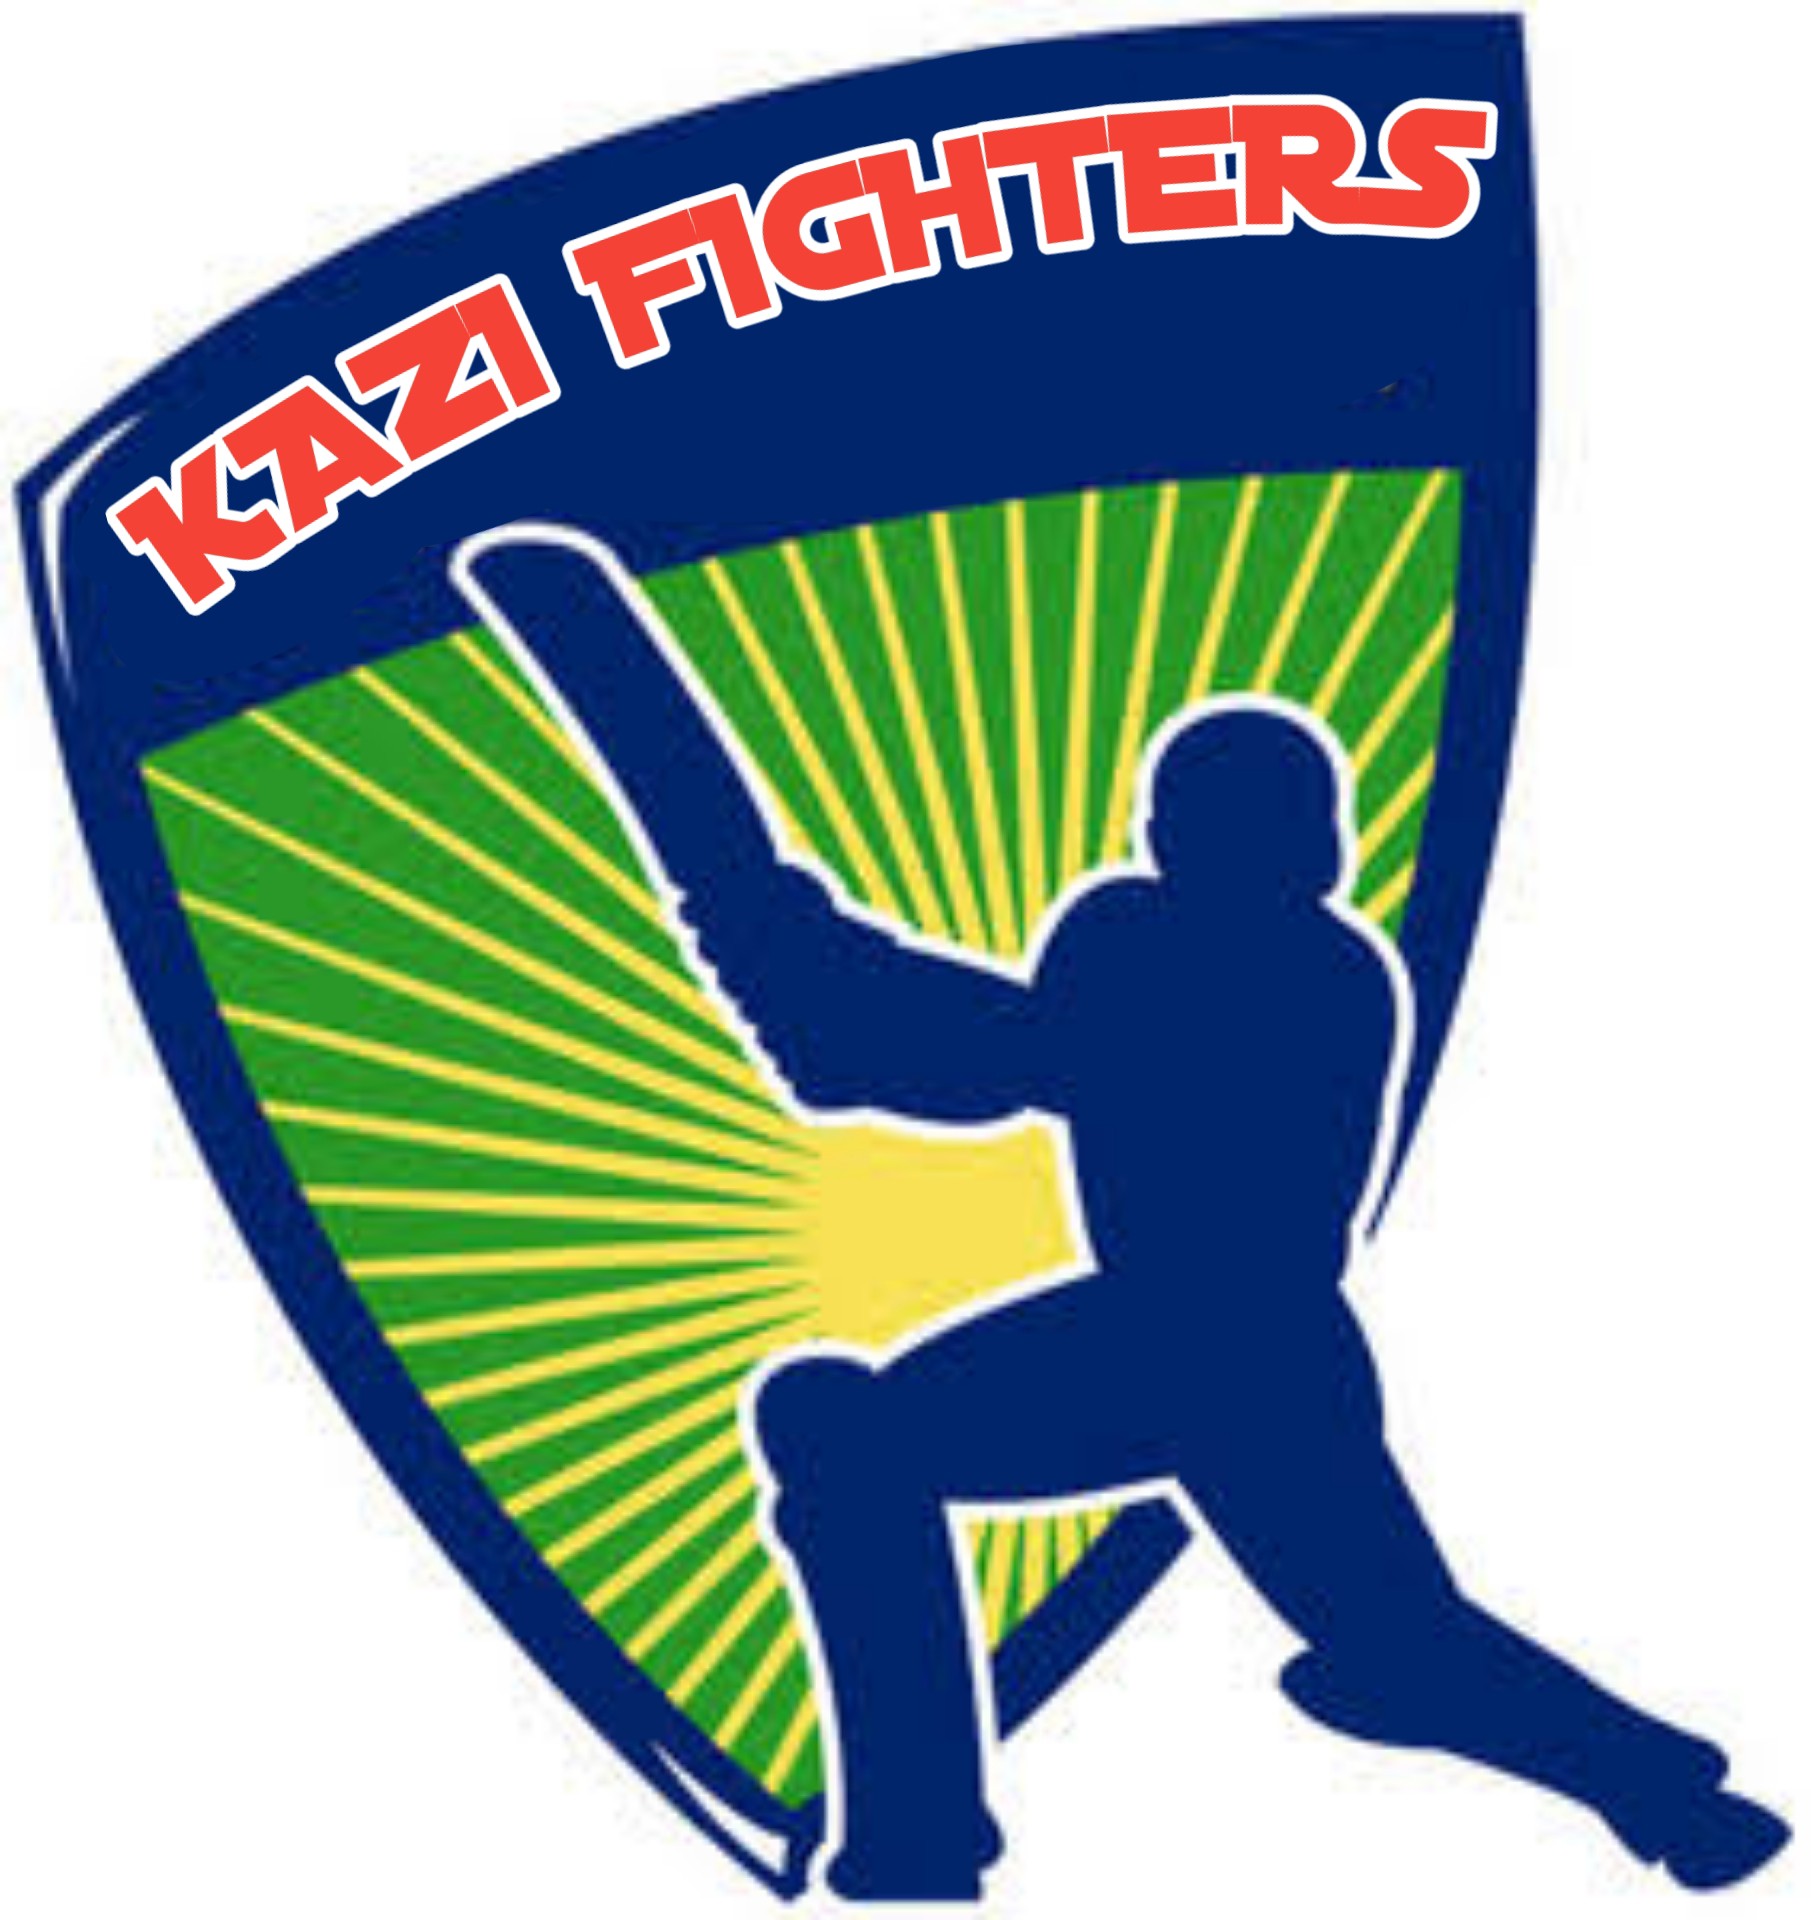 Kazi Fighters